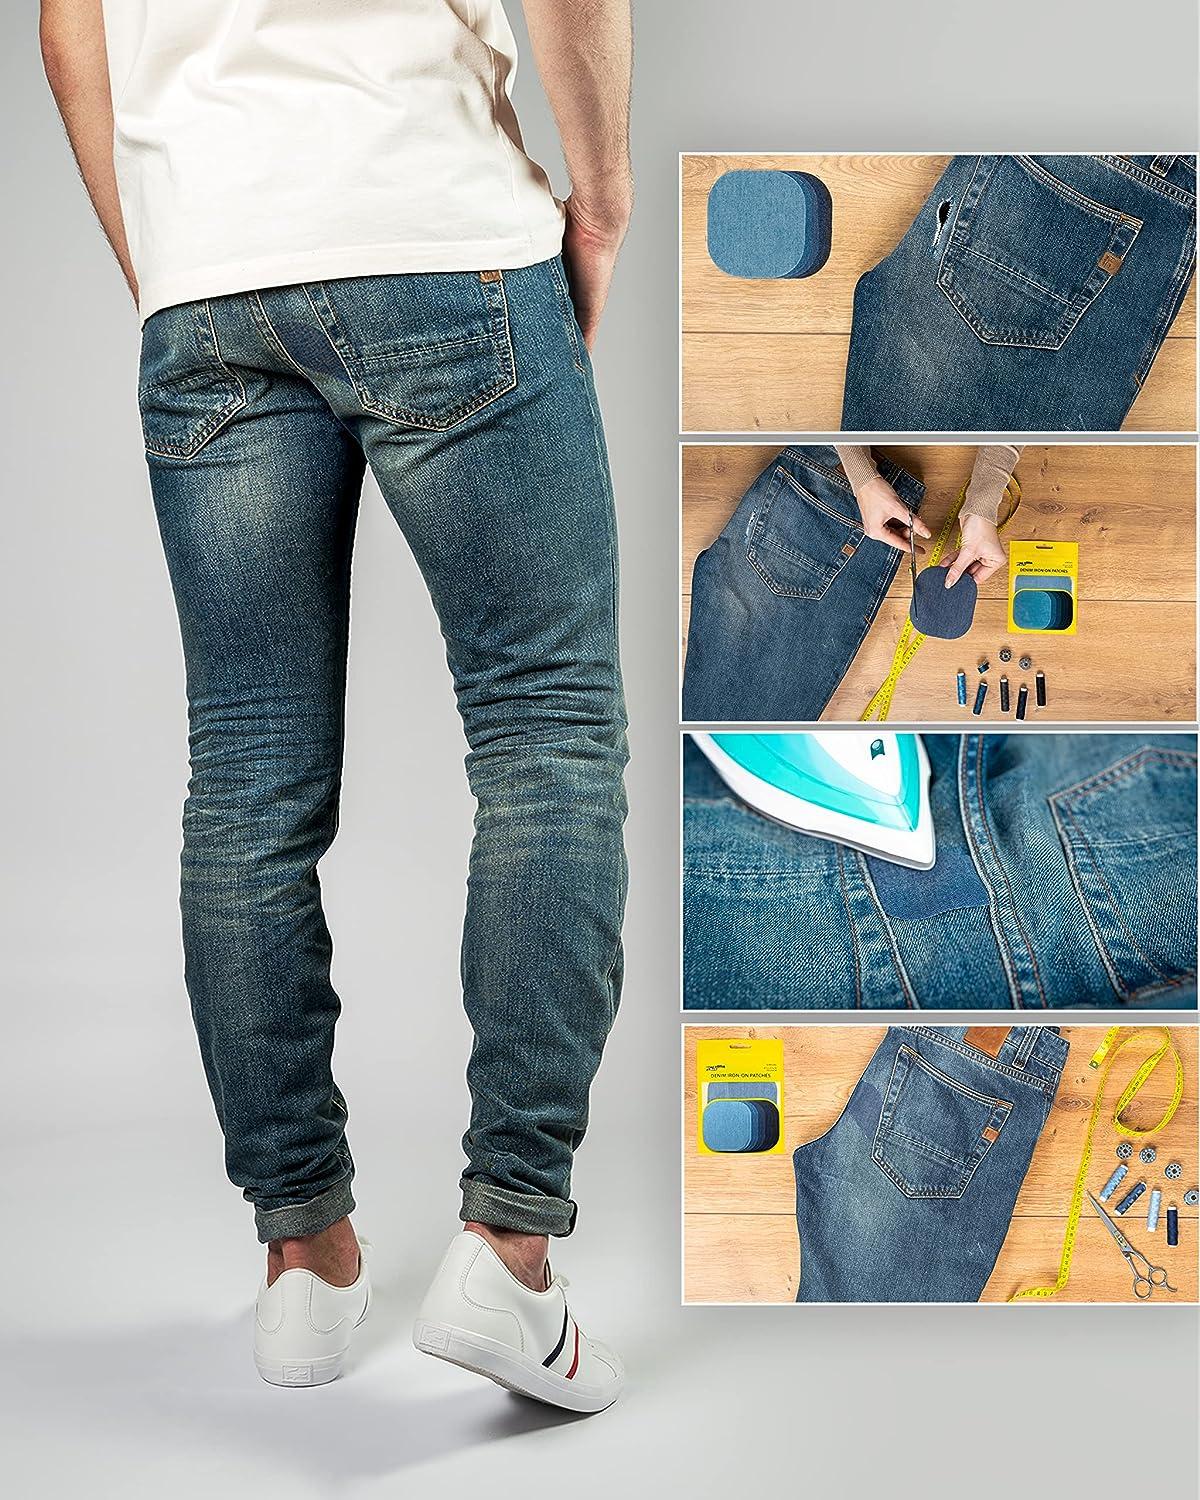  TACVEL 12Pcs Premium Quality Denim Iron on Patches for Jeans,  Strongest Glue 100% Cotton Repair Decorating Kit, Size 3 by 4-1/4 (7.5 cm  x 10.5 cm)-Deep Blue